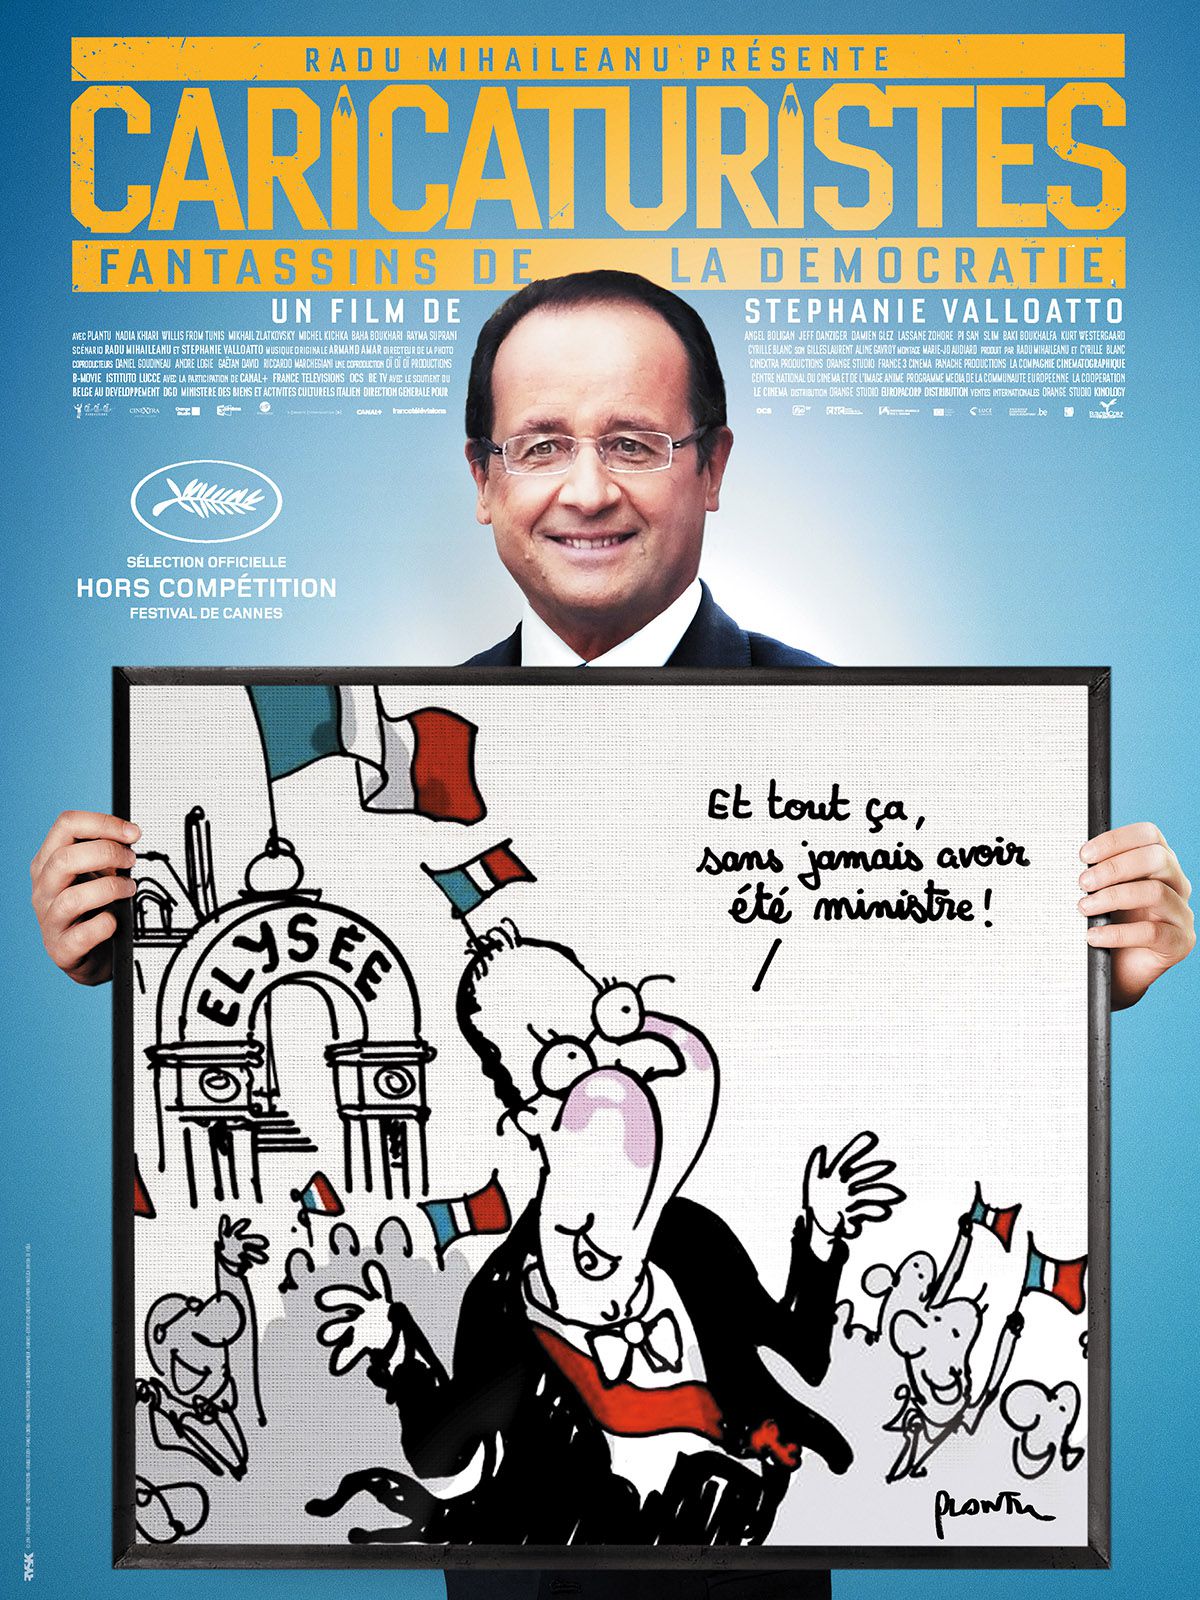 Caricaturistes, fantassins de la démocratie - Documentaire (2014)